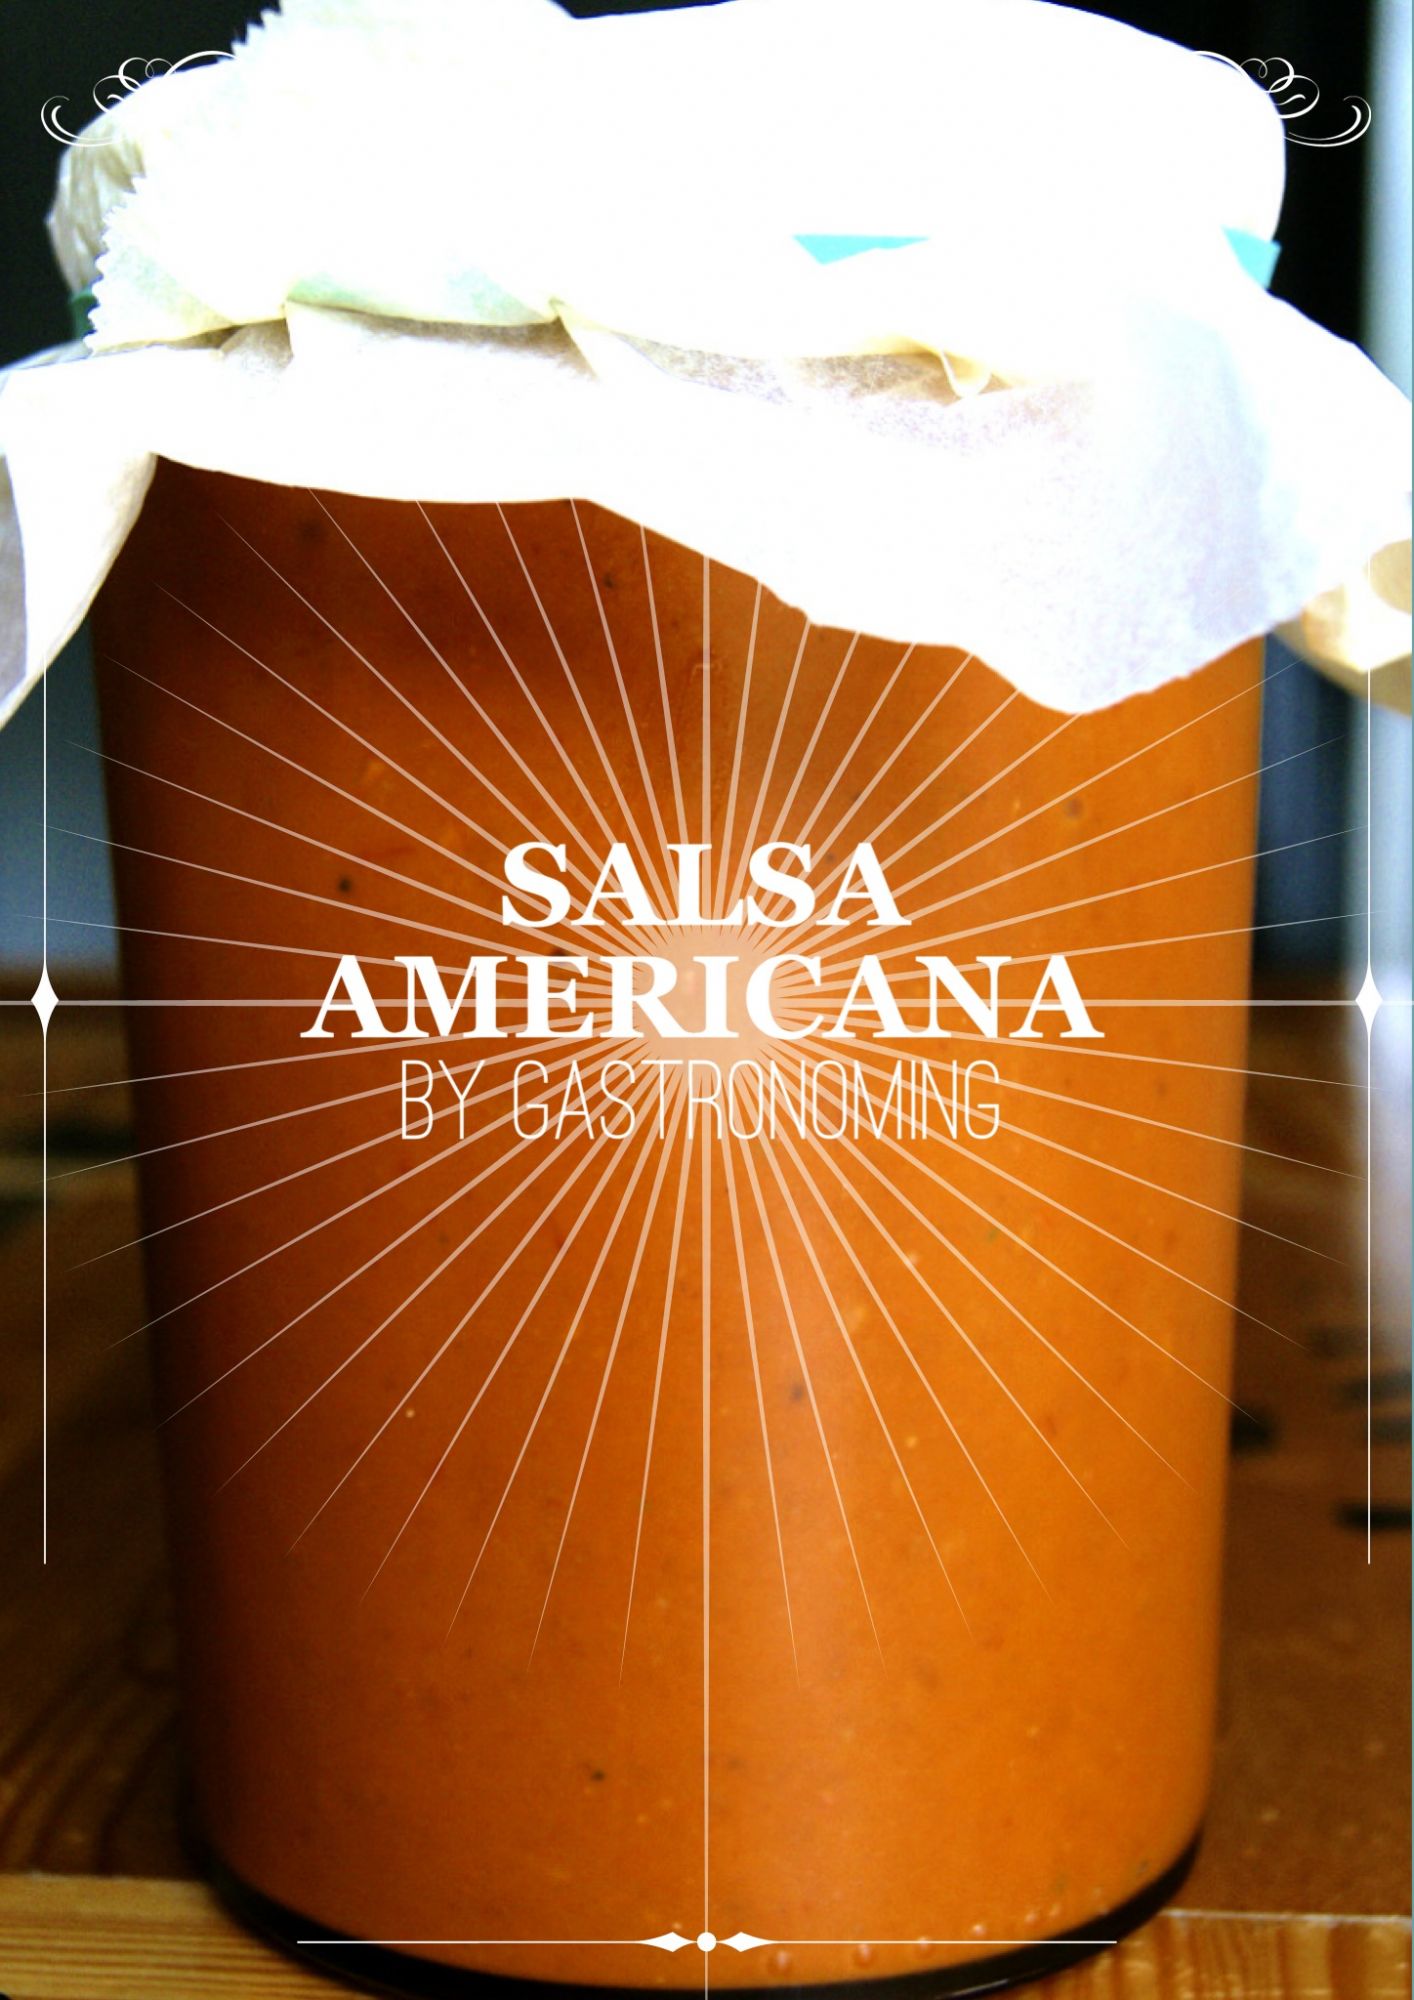 Comida americana variada foto de archivo. Imagen de salsa - 254068678